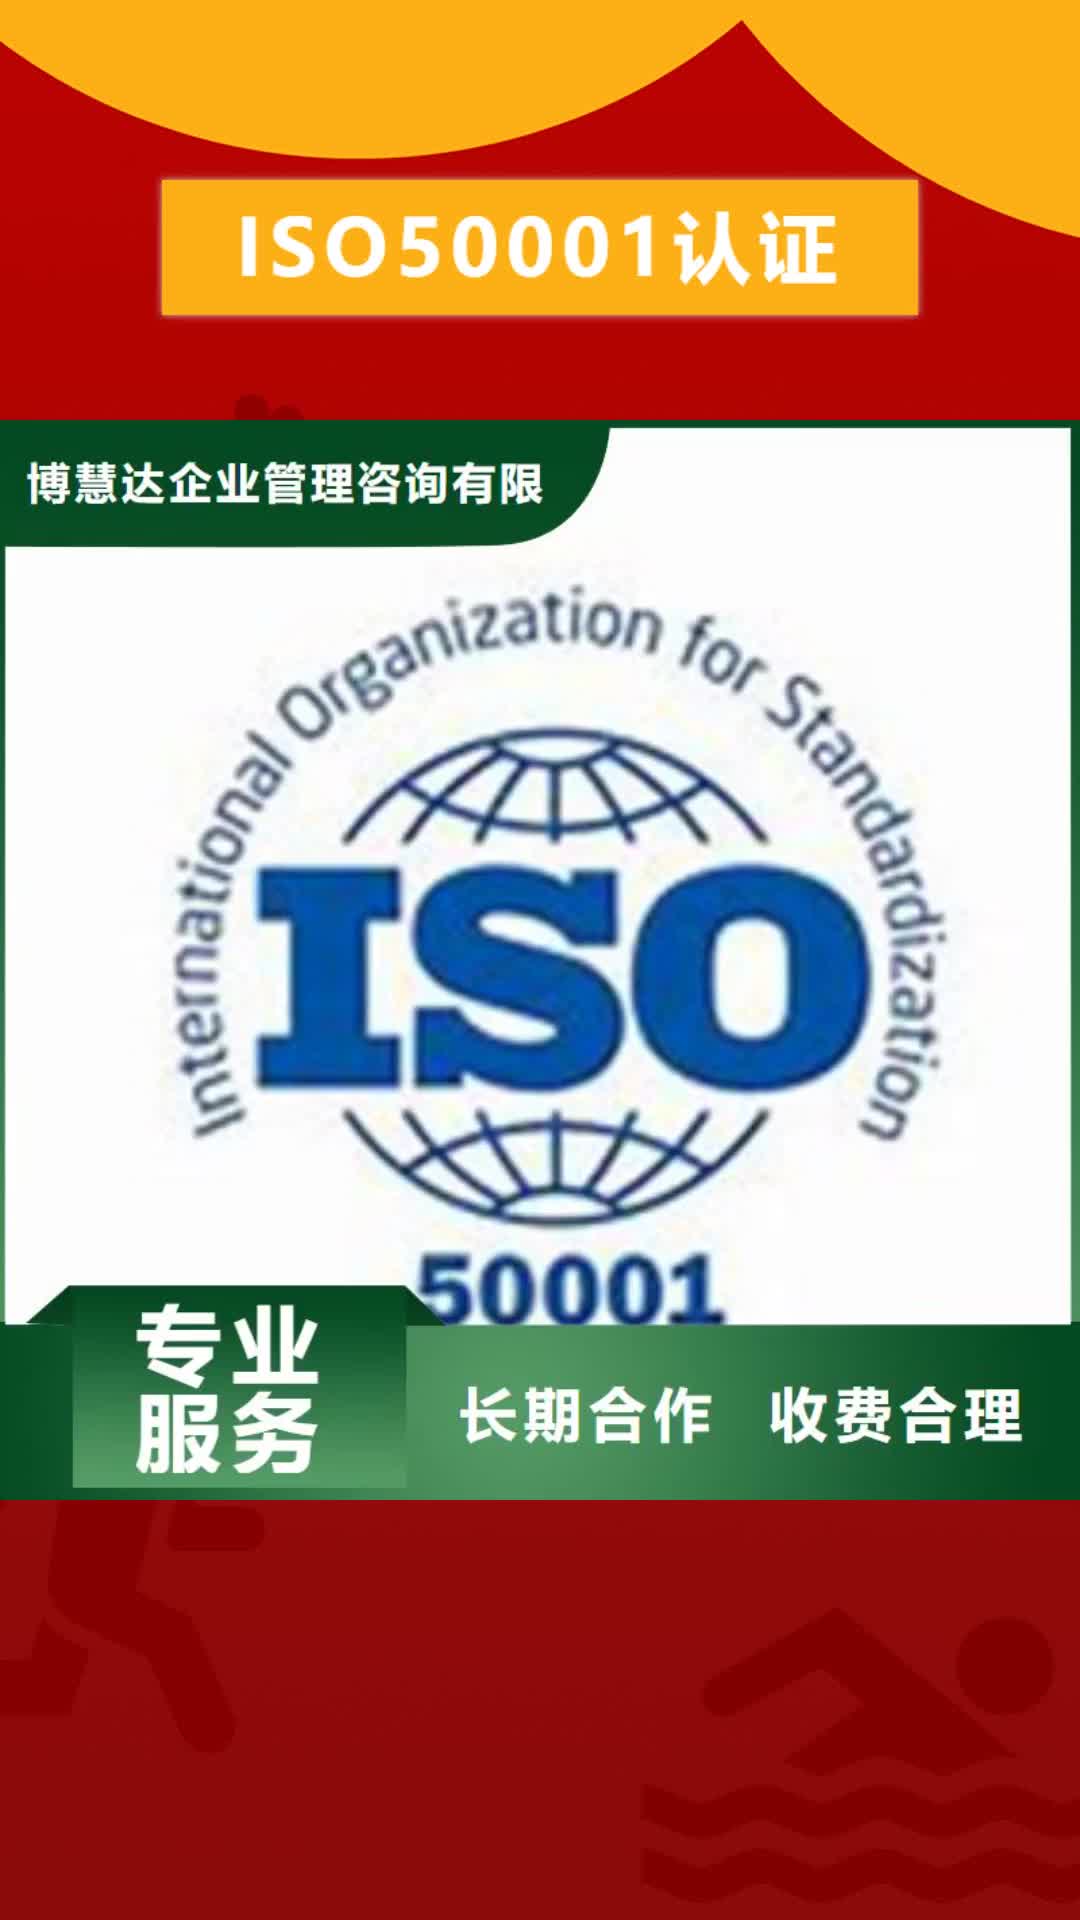 【抚顺 ISO50001认证-ISO9001\ISO9000\ISO14001认证注重质量】